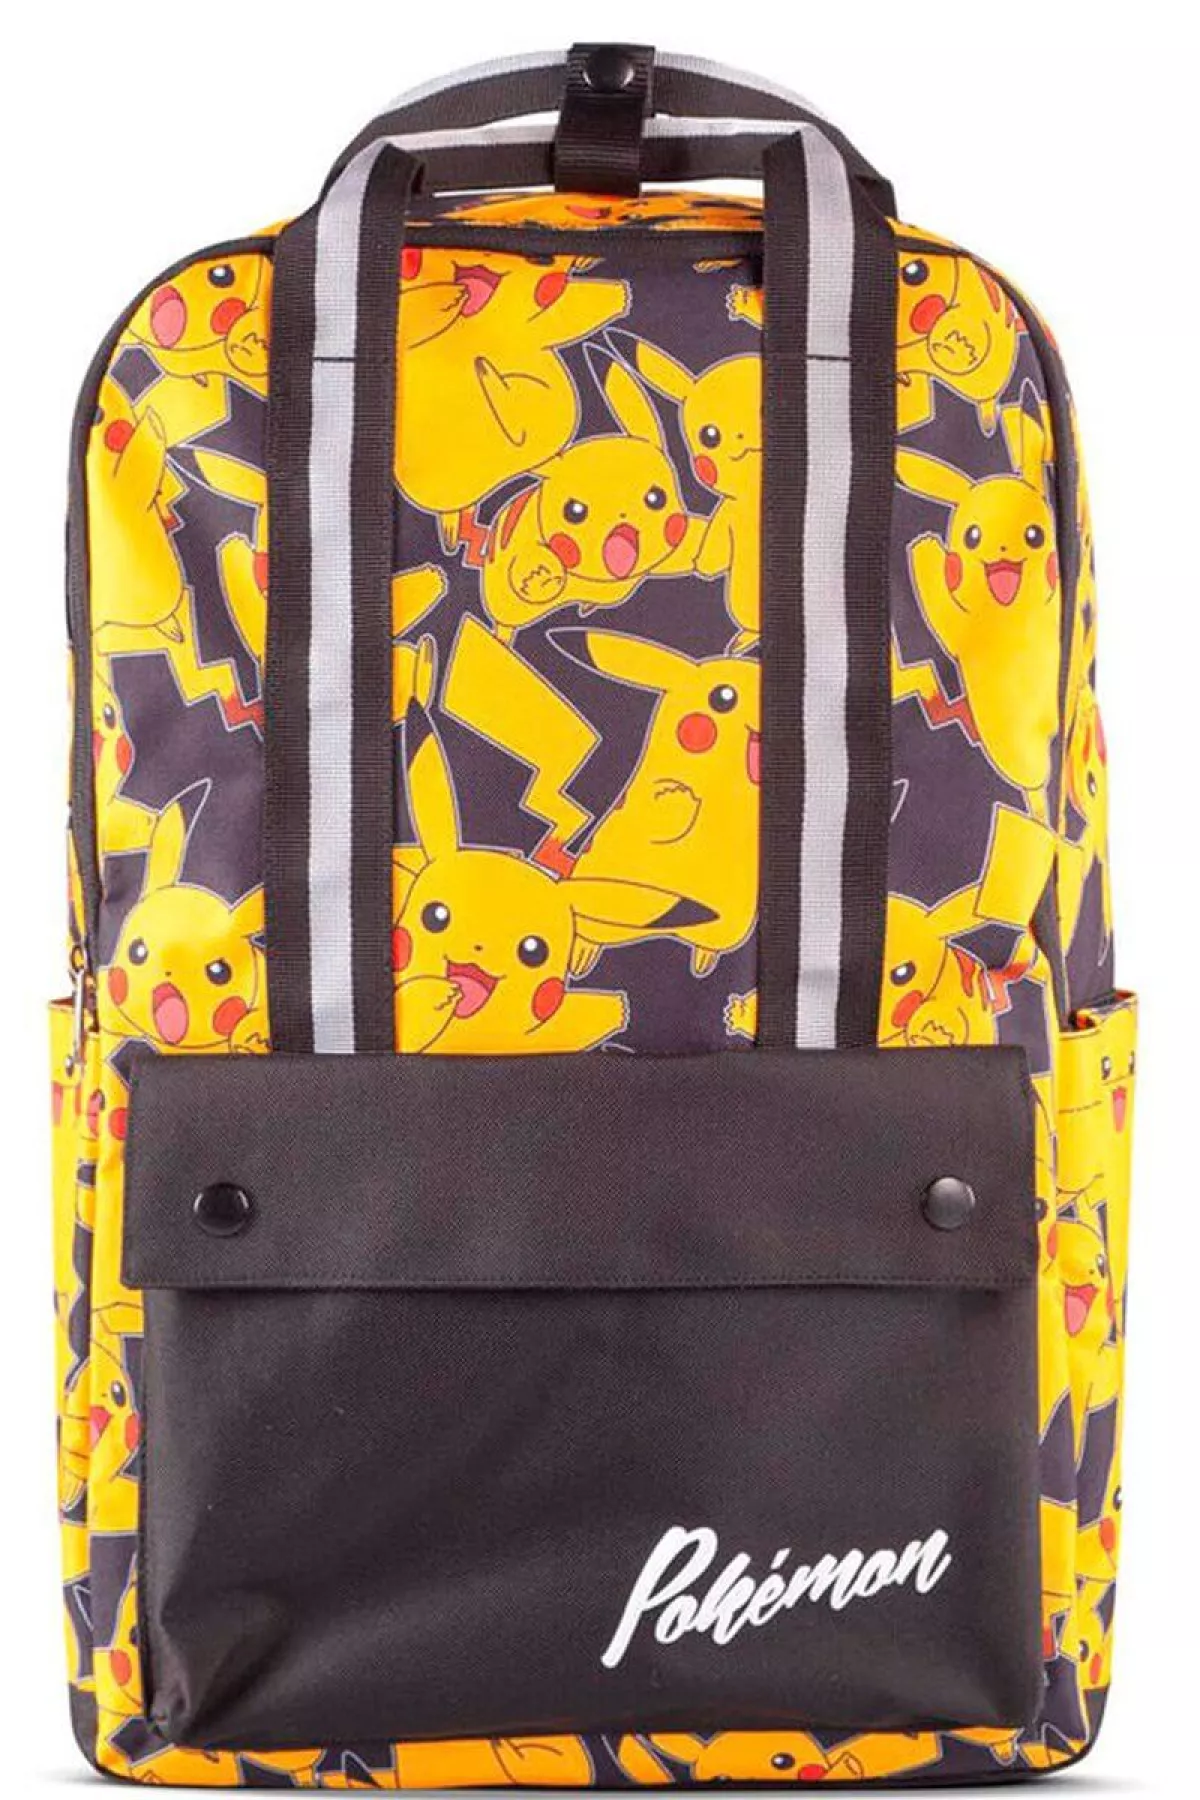 #2 - Pokémon - Rygsæk Med Pikachu - Sort Gul